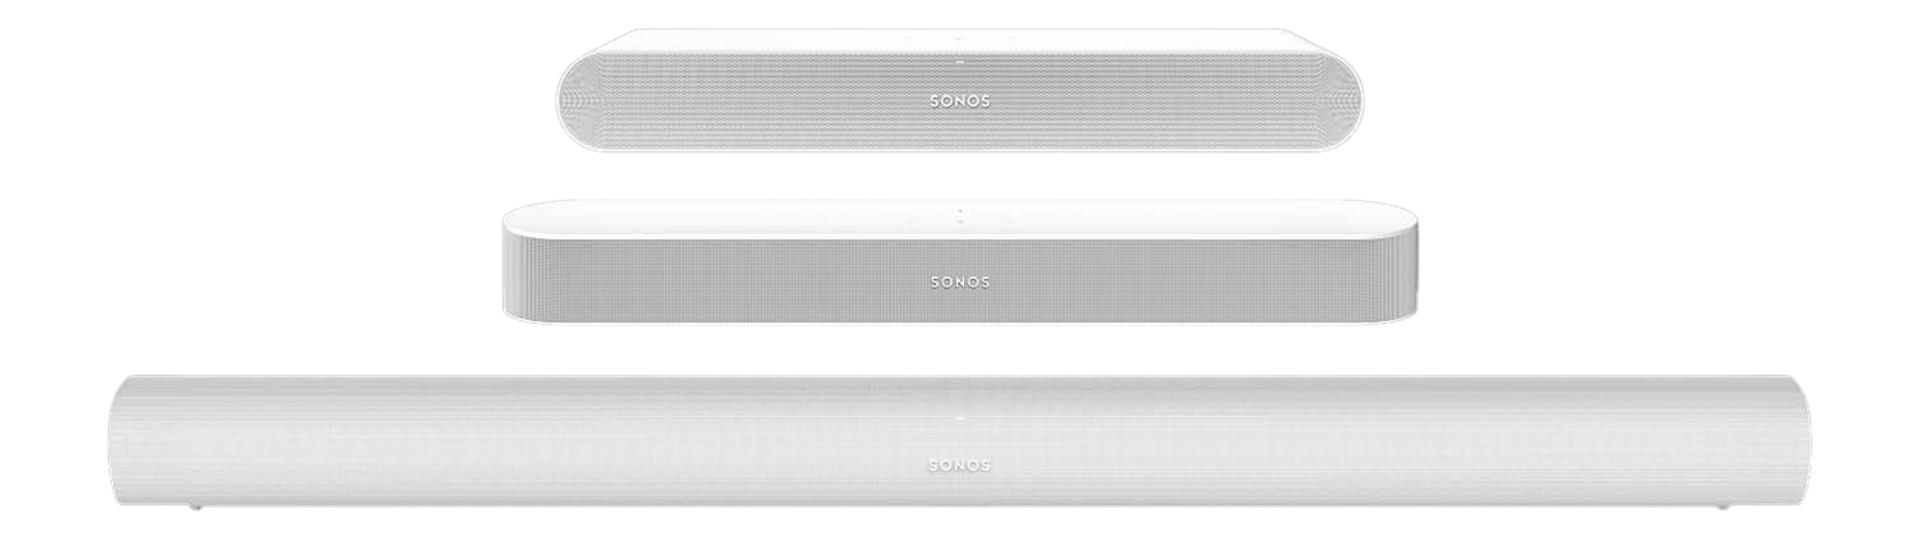 Sonos Arc, análisis y opinión